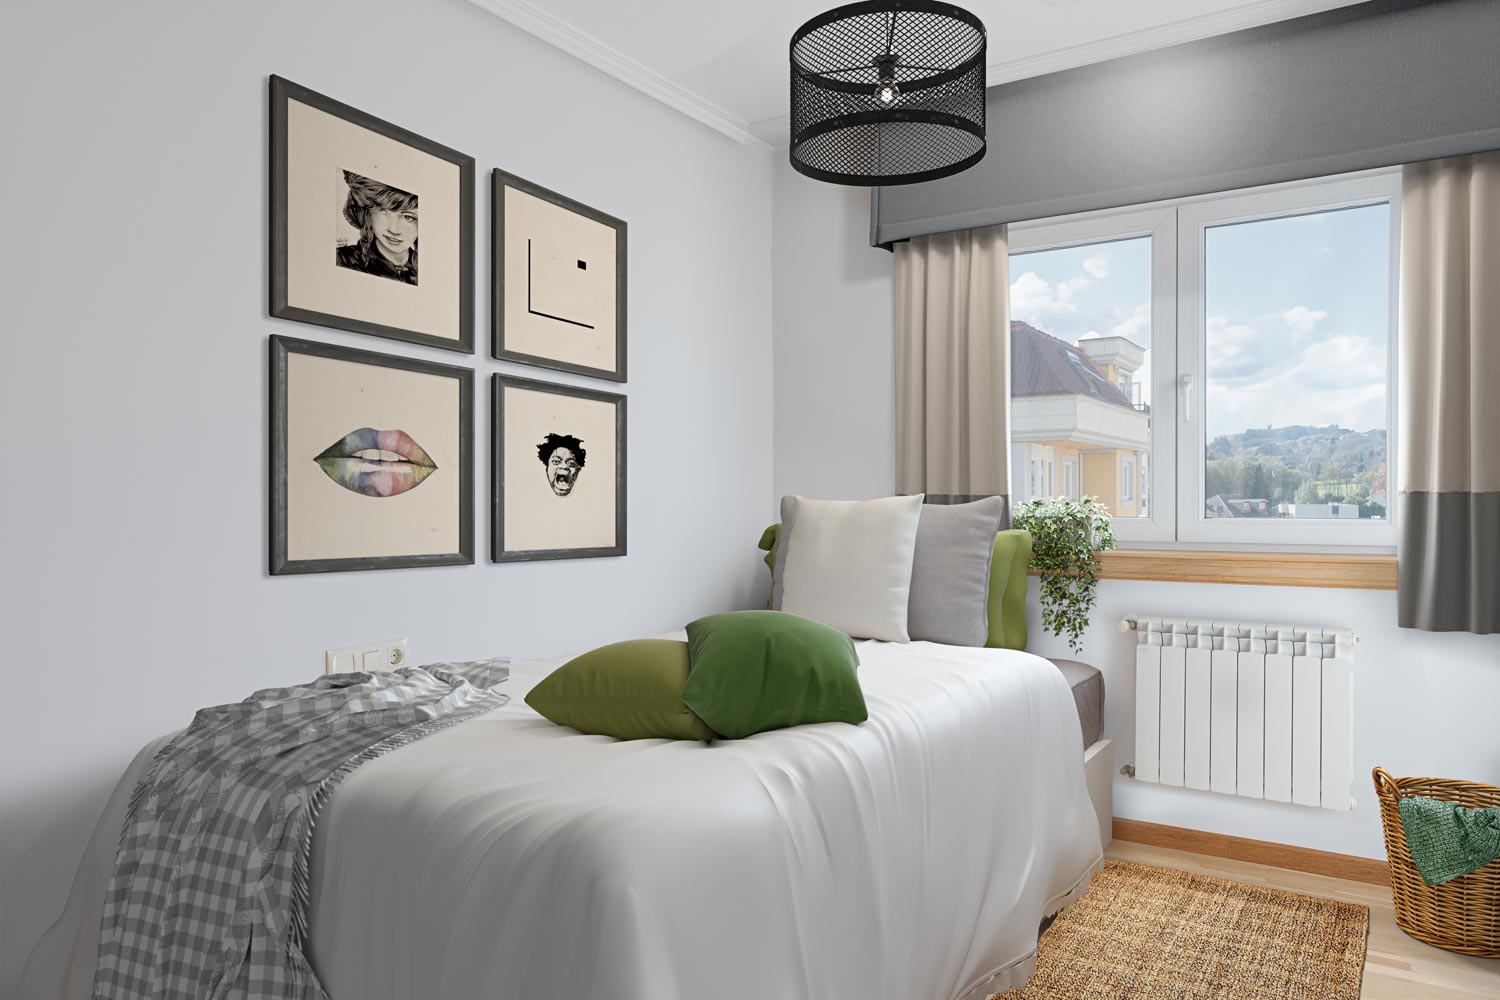 Habitación con una cama con sábanas blancas y decoración en tonos neutros y verdes, arte gráfico en la pared, vistas exteriores a través de la ventana y detalles decorativos como una lámpara de techo industrial y una cesta de mimbre